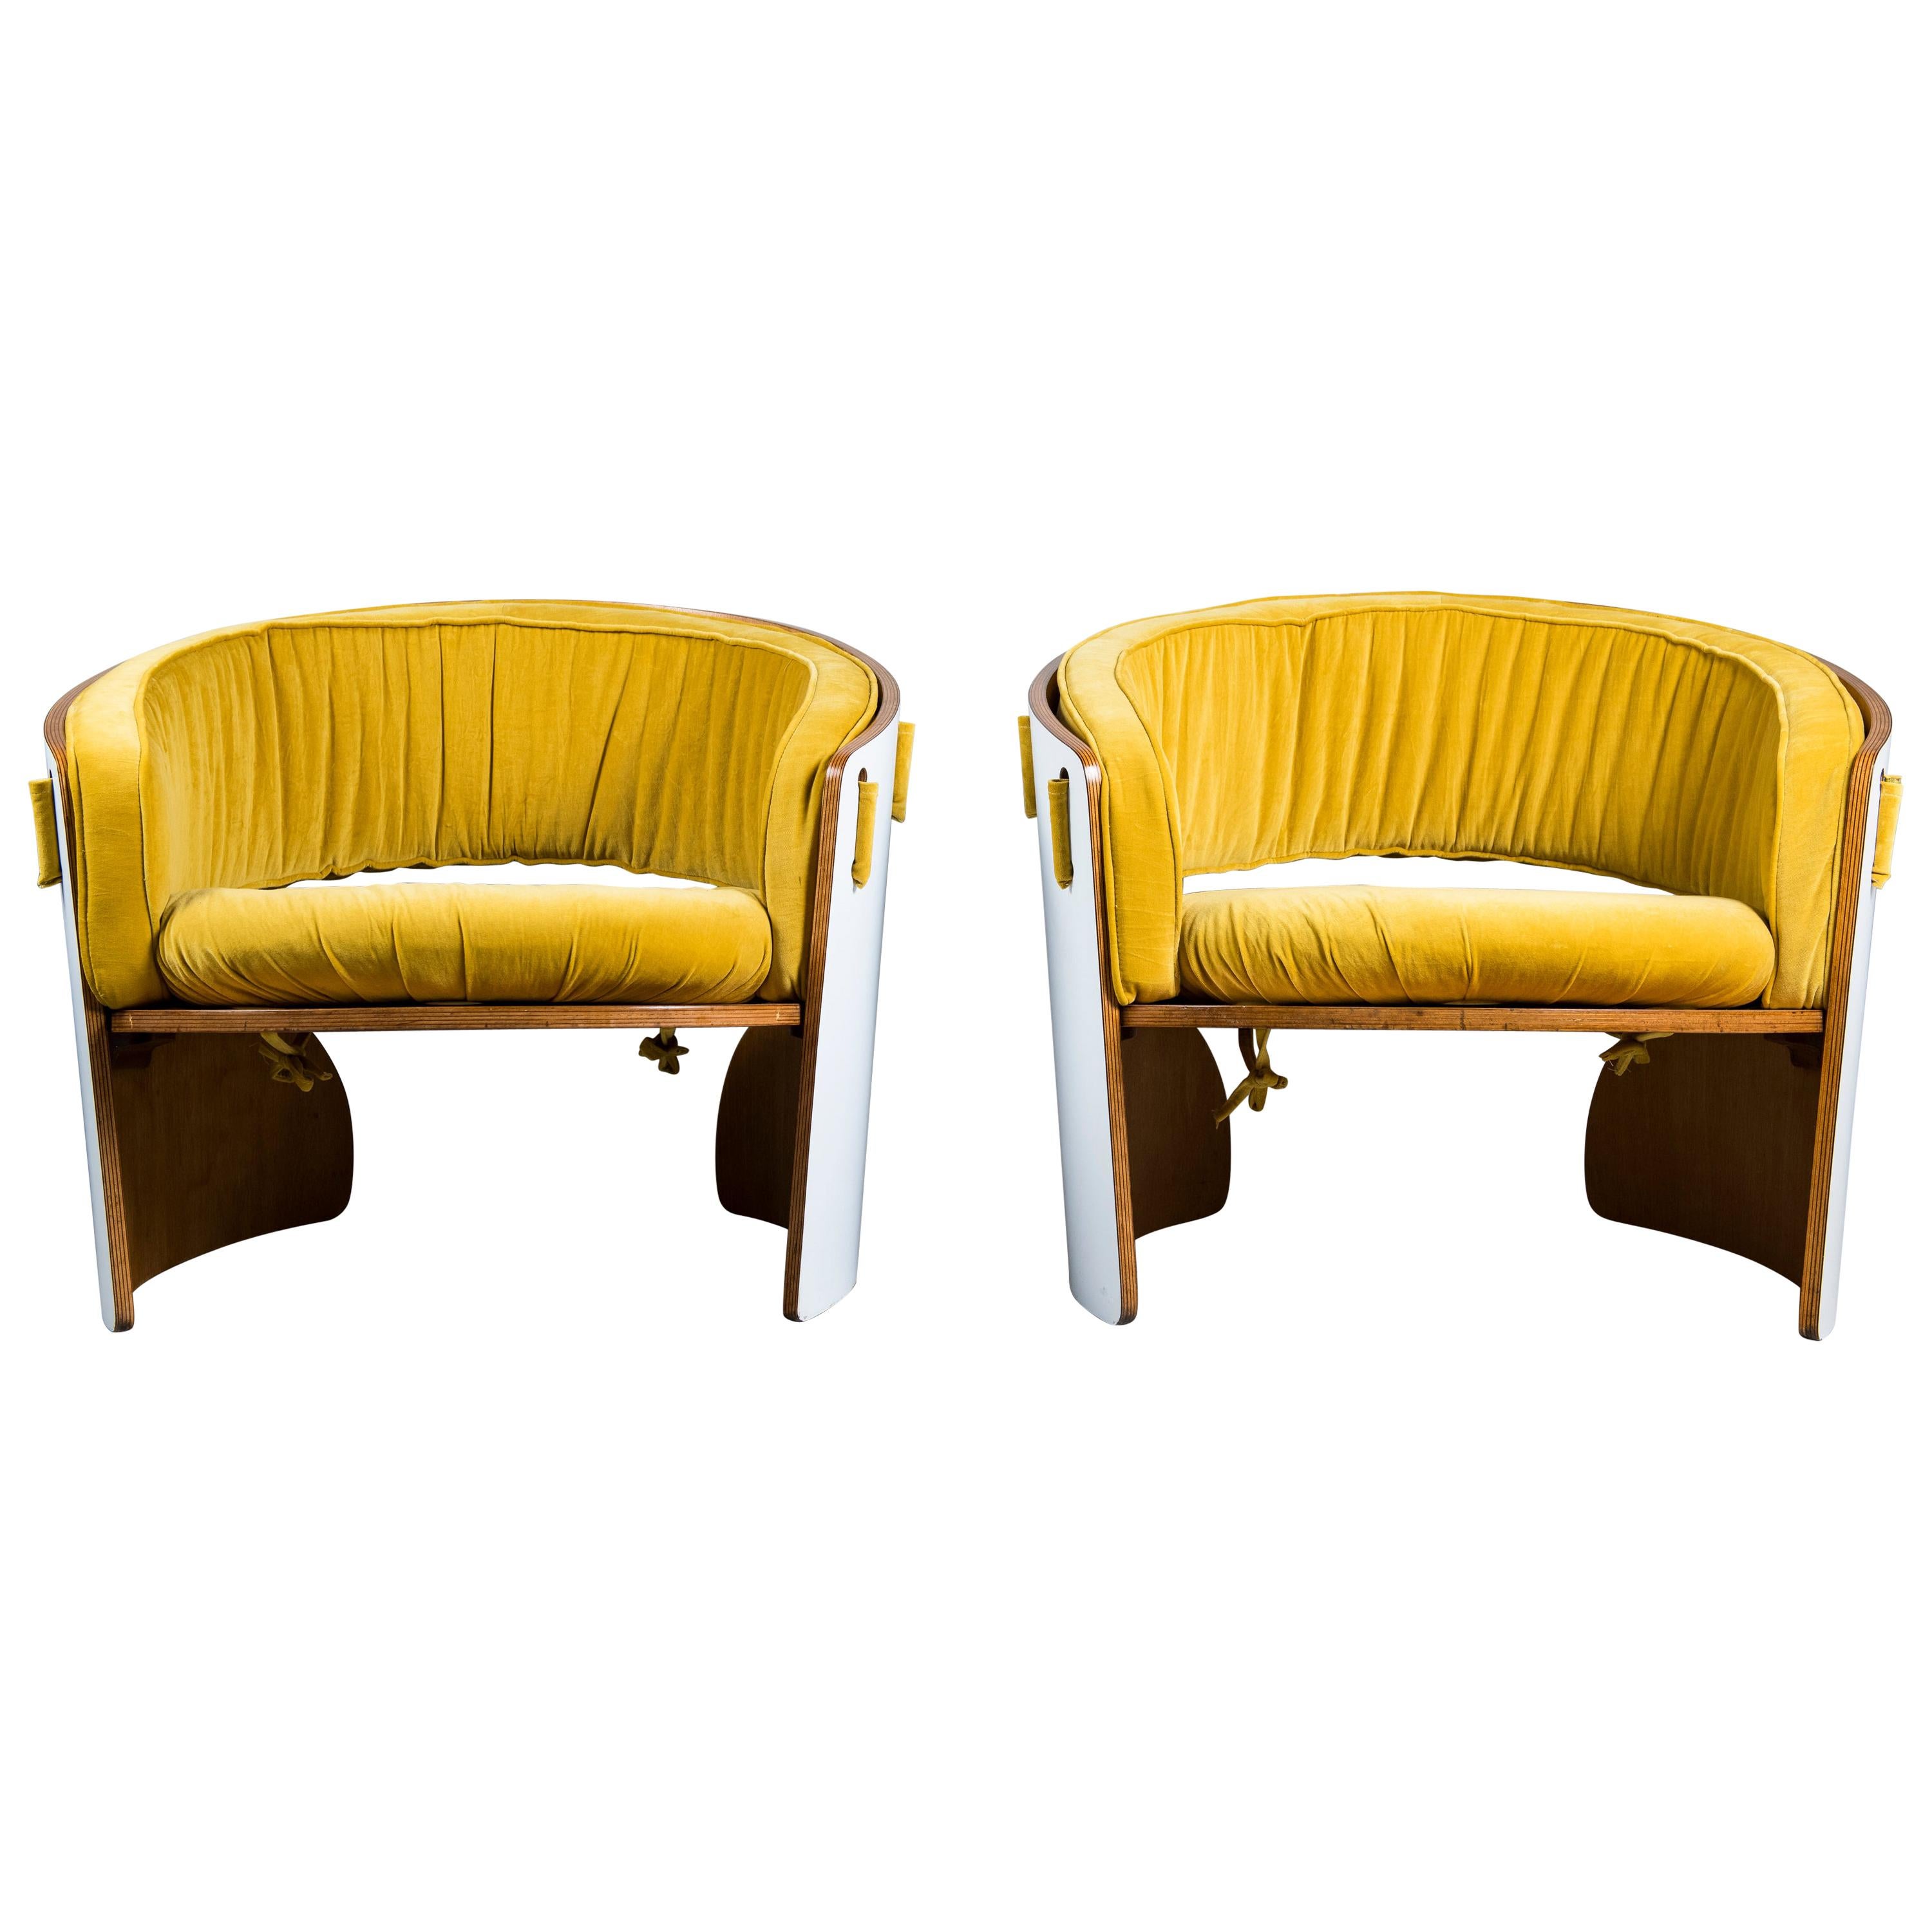 Paire de fauteuils en bois, formica et velours, conçus par Ricardo Blanco, 1969